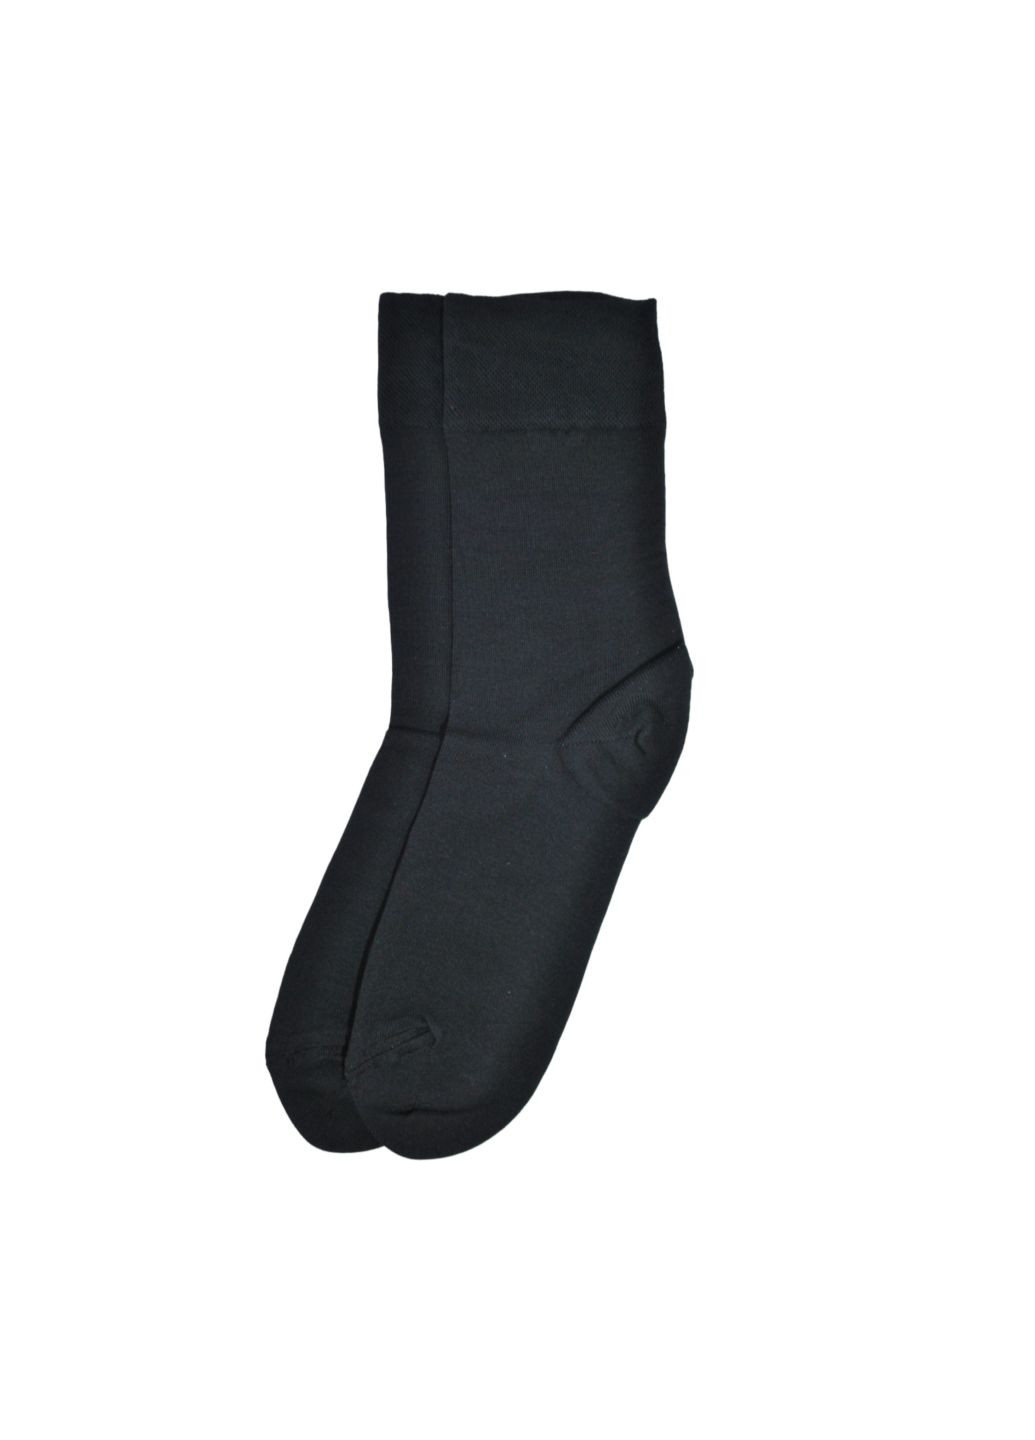 NTF Шкарпетки чол. (середньої довжини) MS3C/Sl-cl, р.39-42, black. Набір (3 шт.) MZ ms3c_sl-cl (259038666)